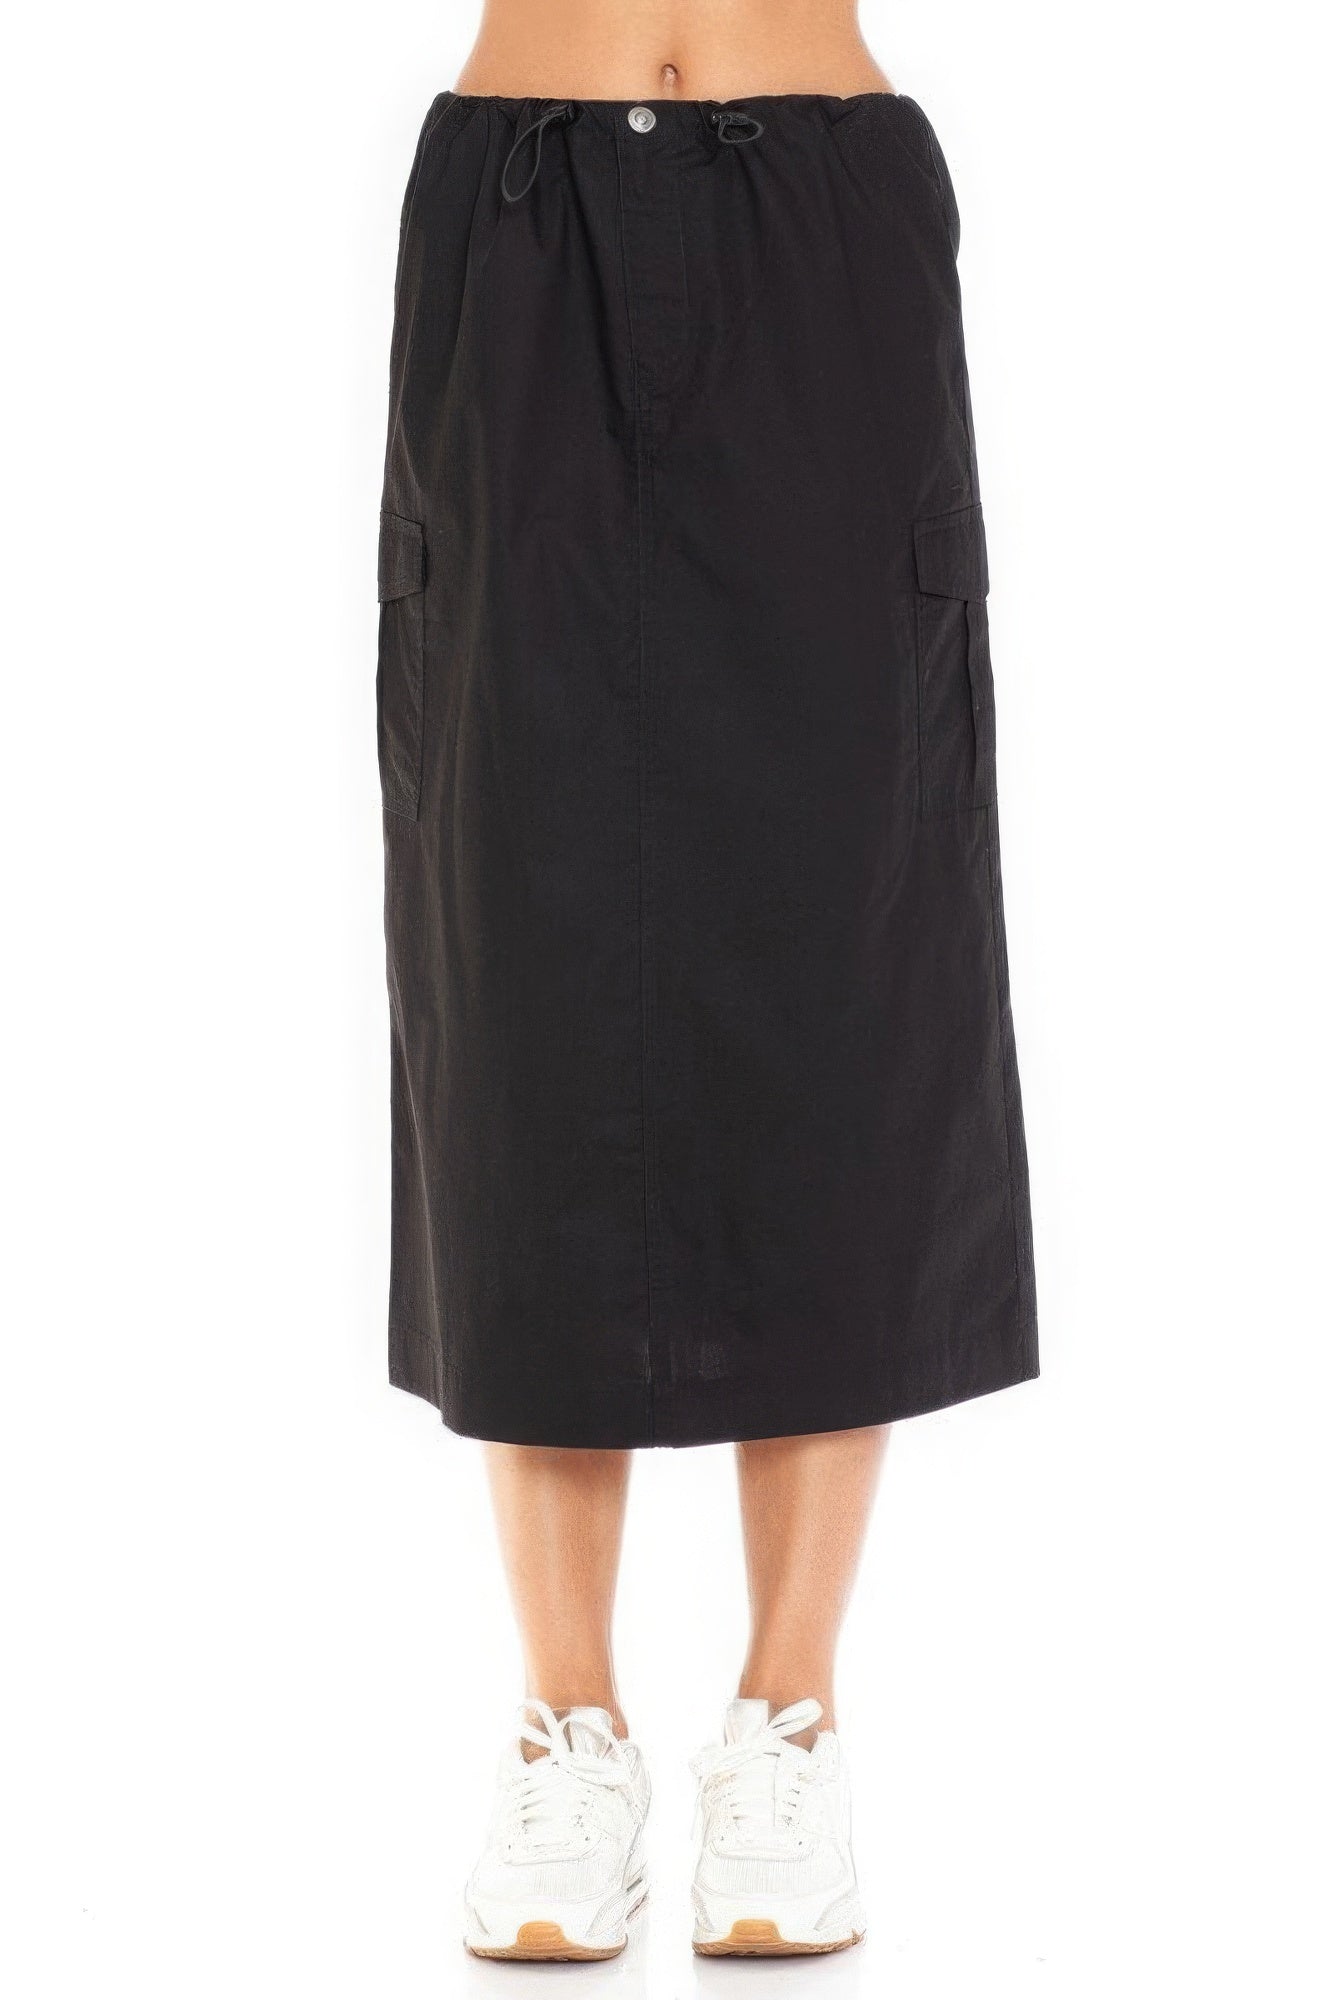 Cargo Skirt With Drawstring Midi Skirt - Tigbuls Variety Fashion